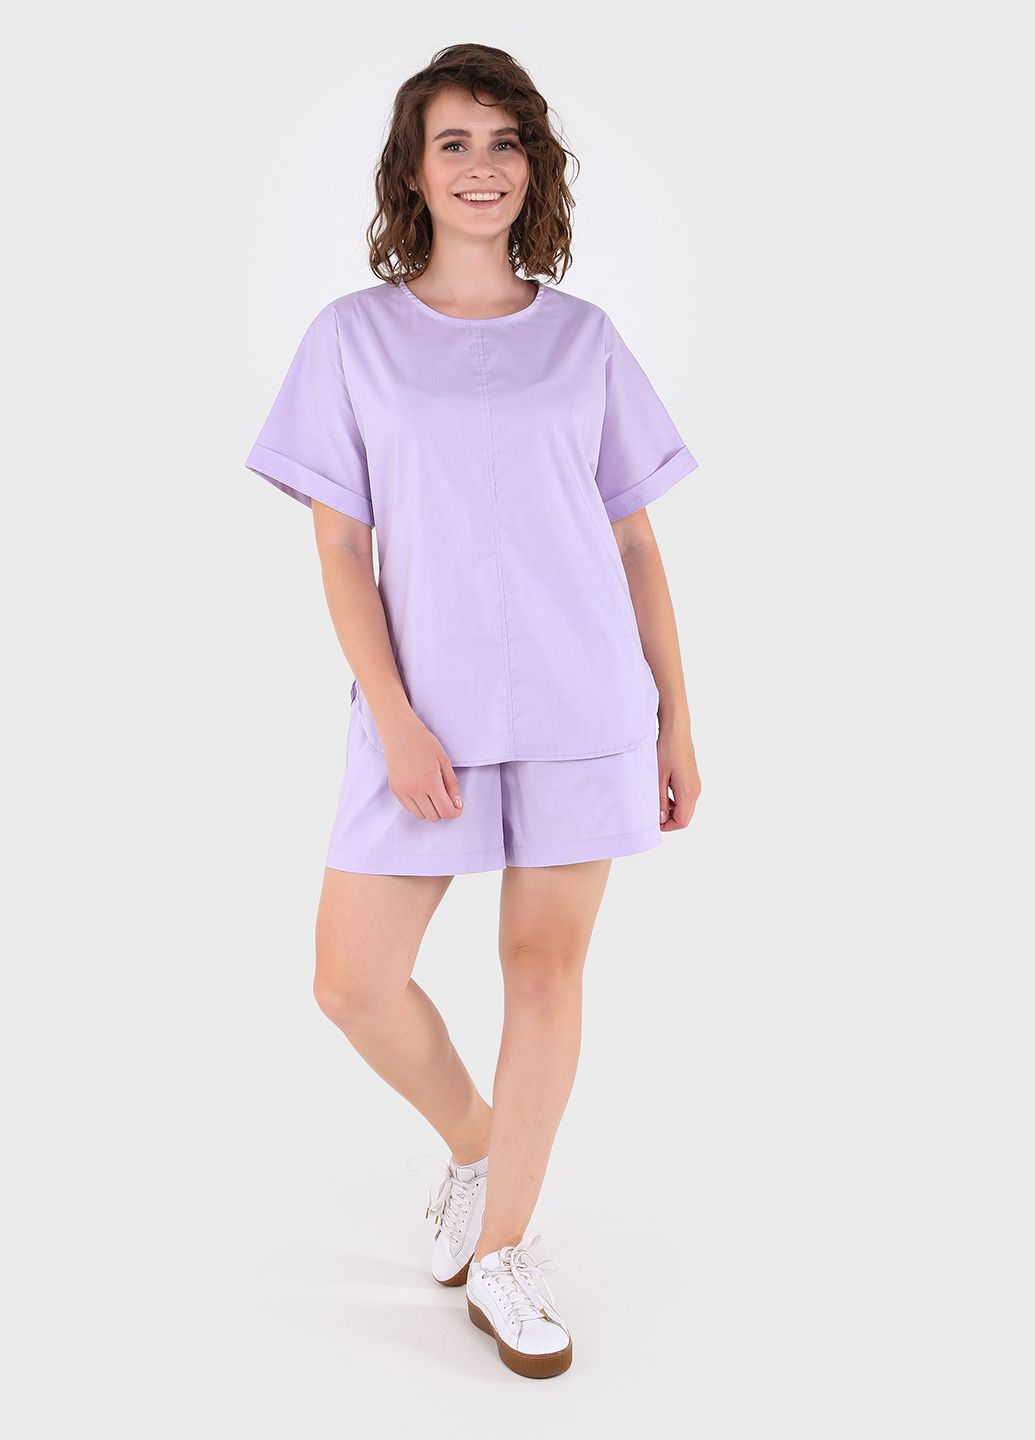 Купить Оверсайз хлопковая футболка женская сиреневого цвета Merlini Ливорно 800000040, размер 42-44 в интернет-магазине